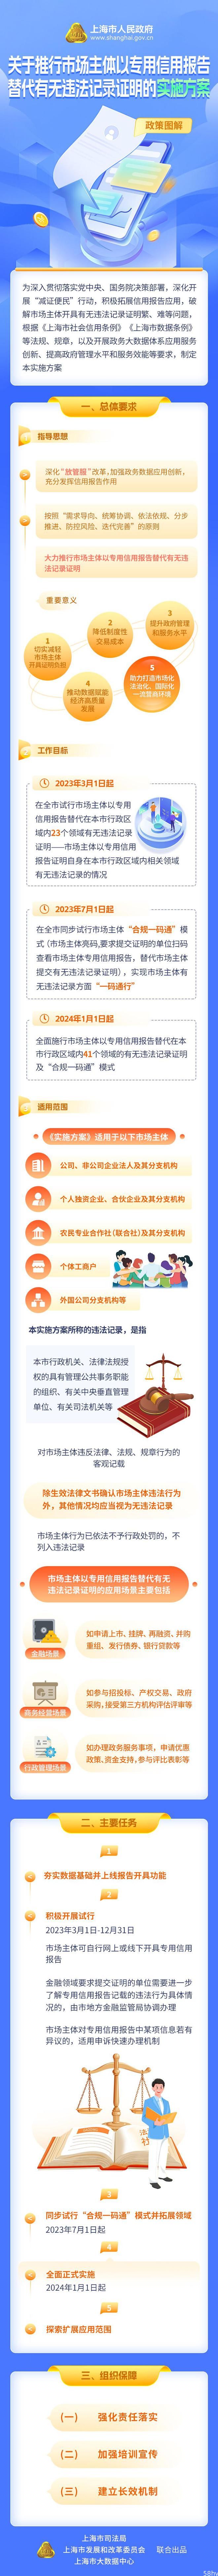 一份信用报告代替一摞证明，上海如何为市场主体行政申请提速